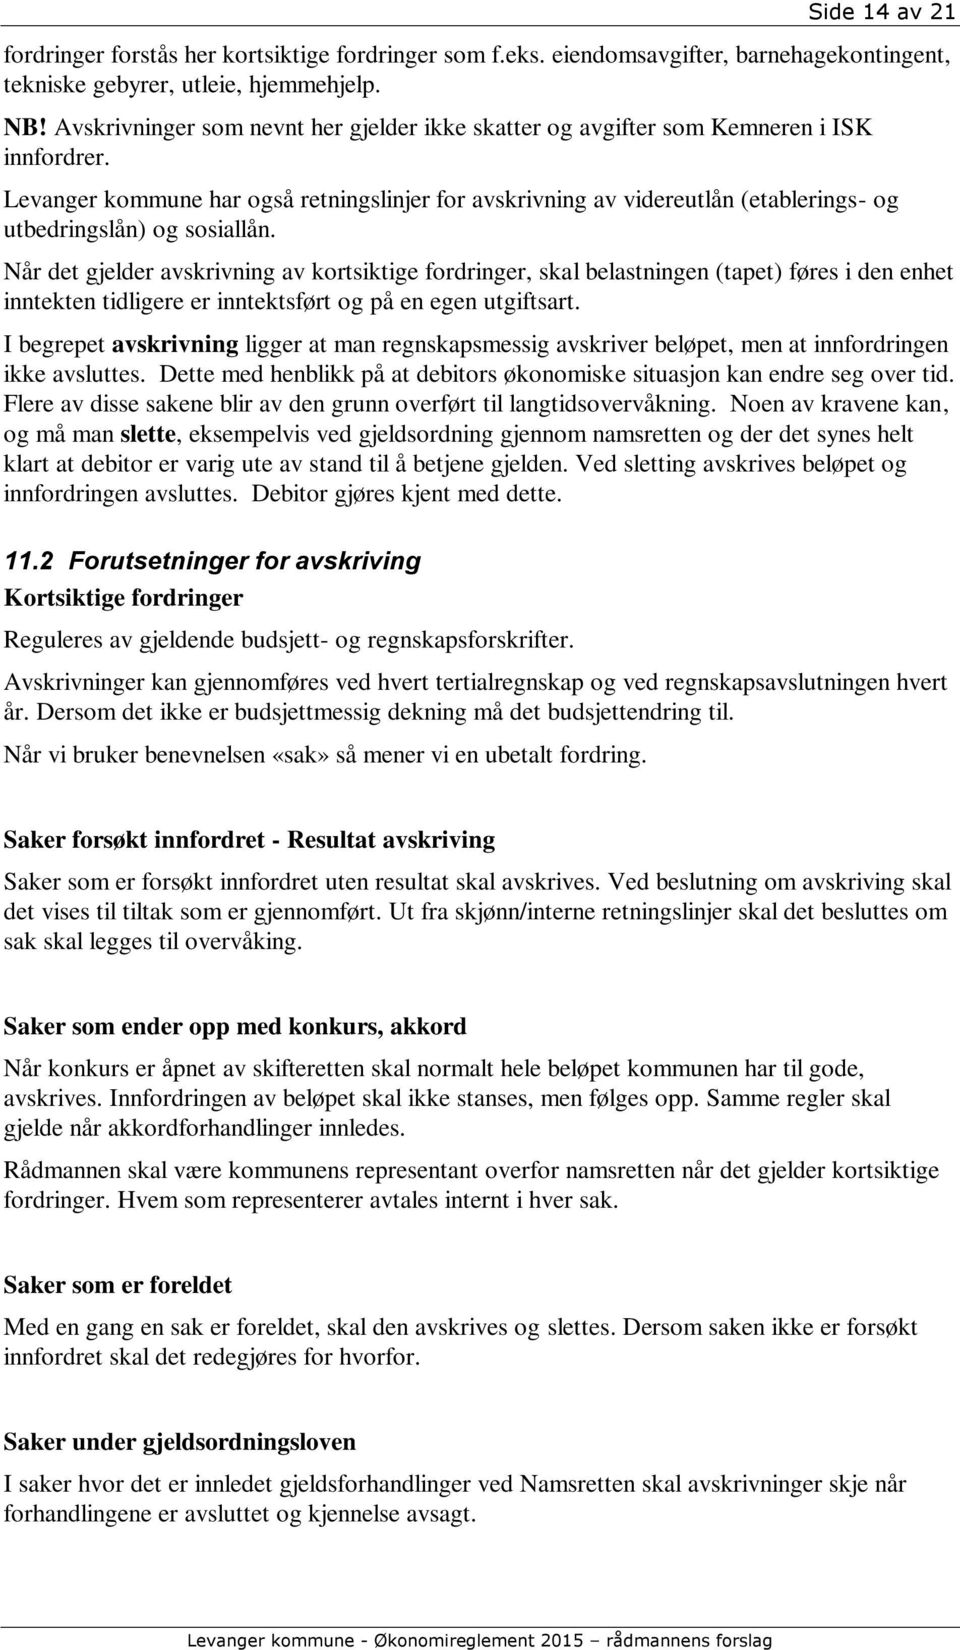 Levanger kommune har også retningslinjer for avskrivning av videreutlån (etablerings- og utbedringslån) og sosiallån.